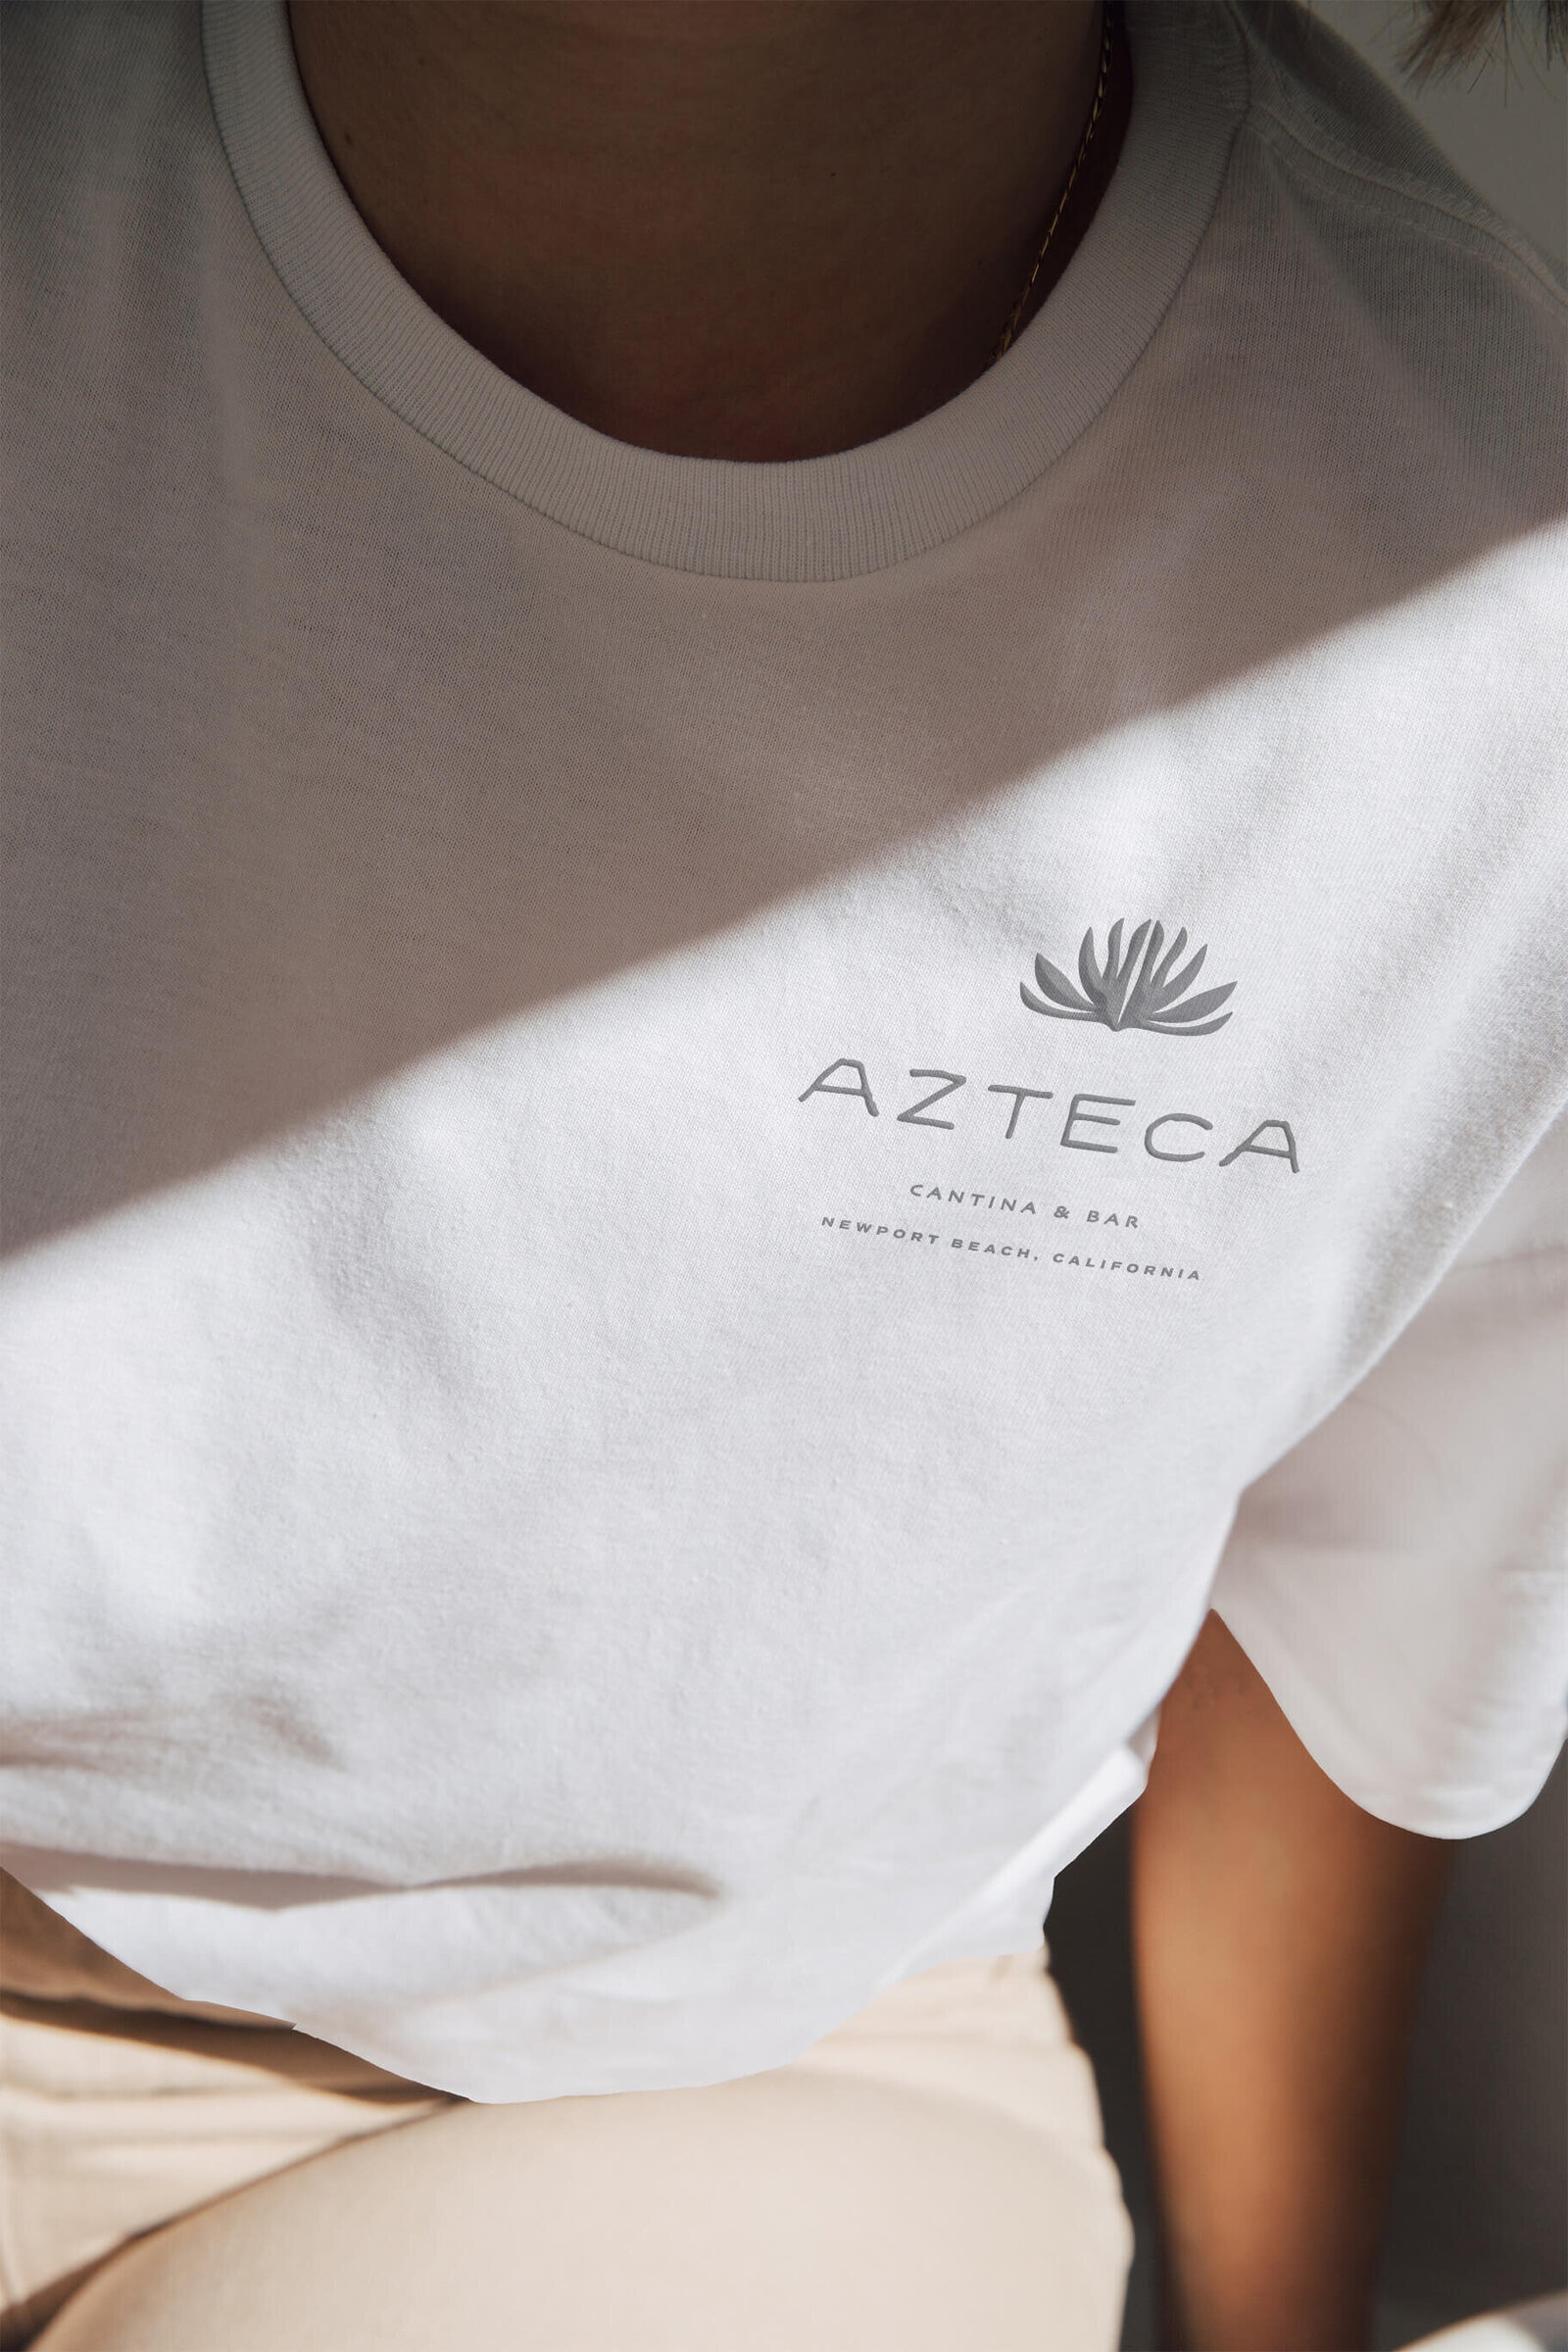 Azteca Restaurant Brand 29